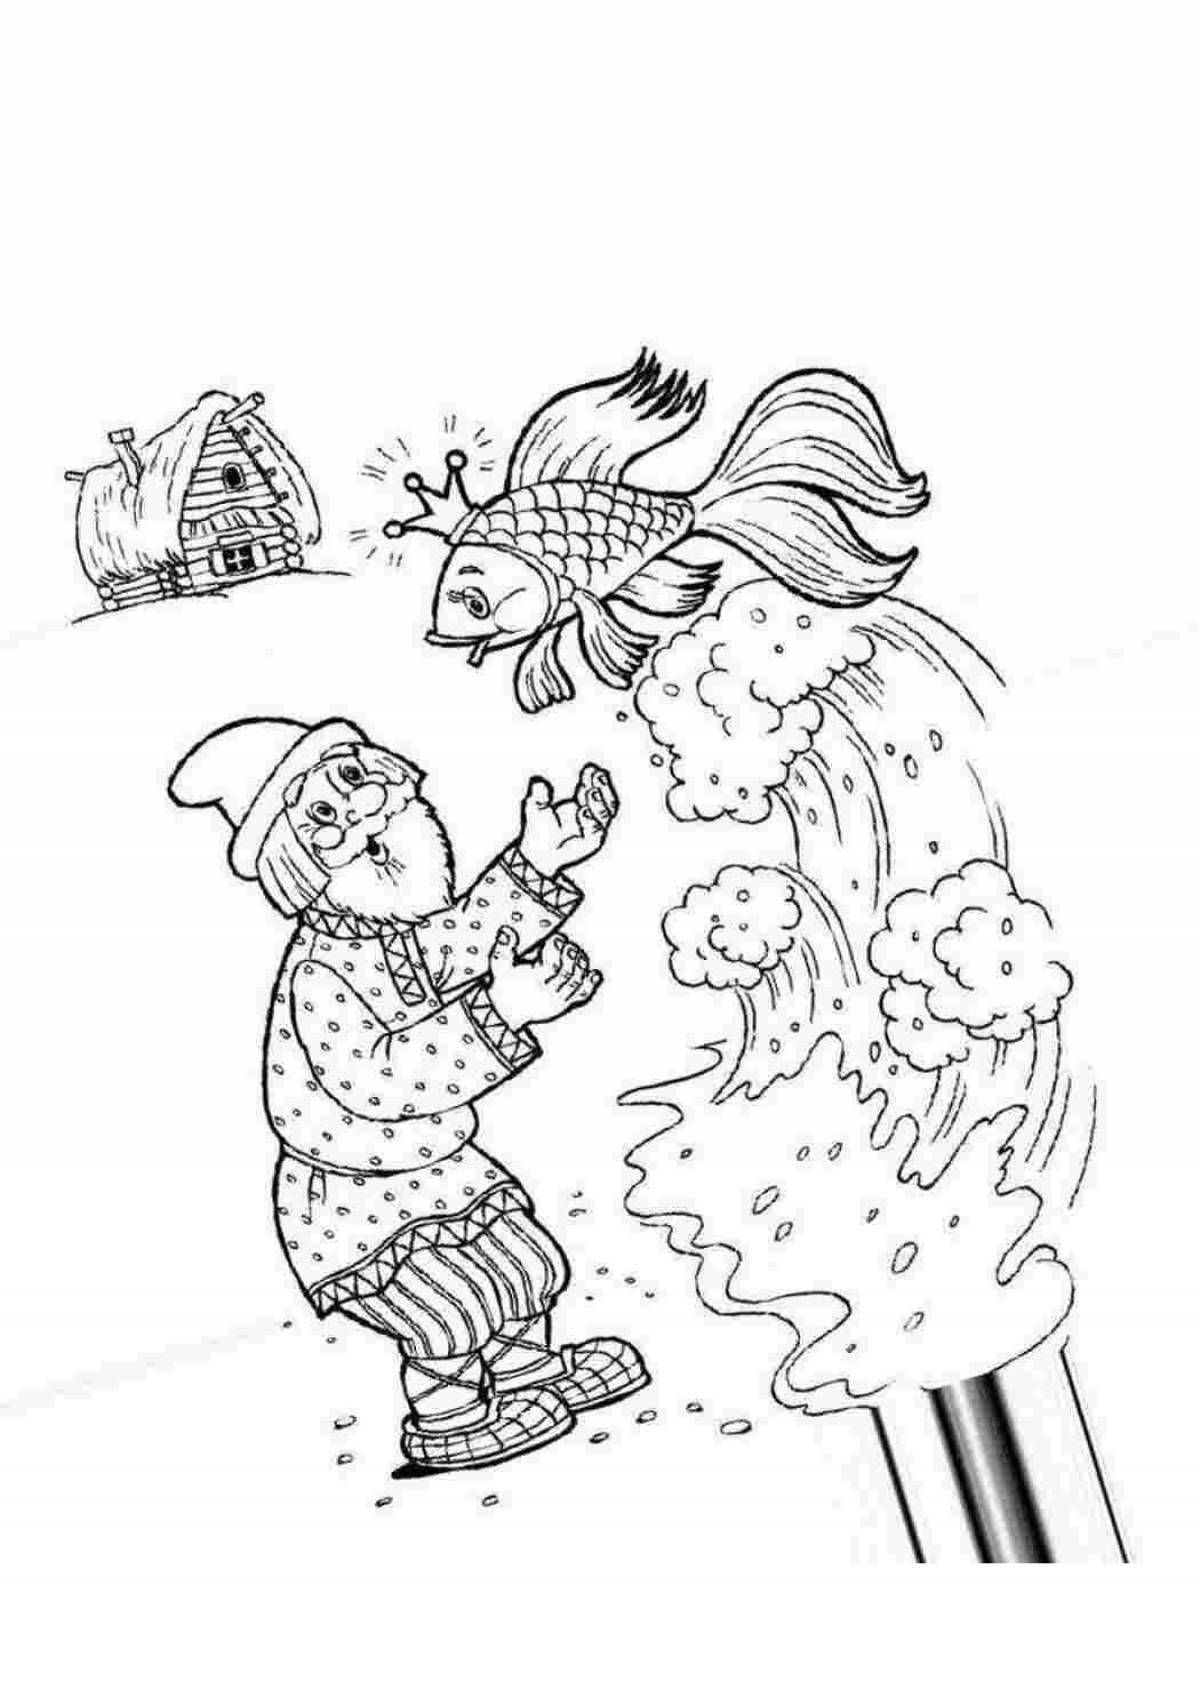 Заманчивая иллюстрация рыбака и рыбы